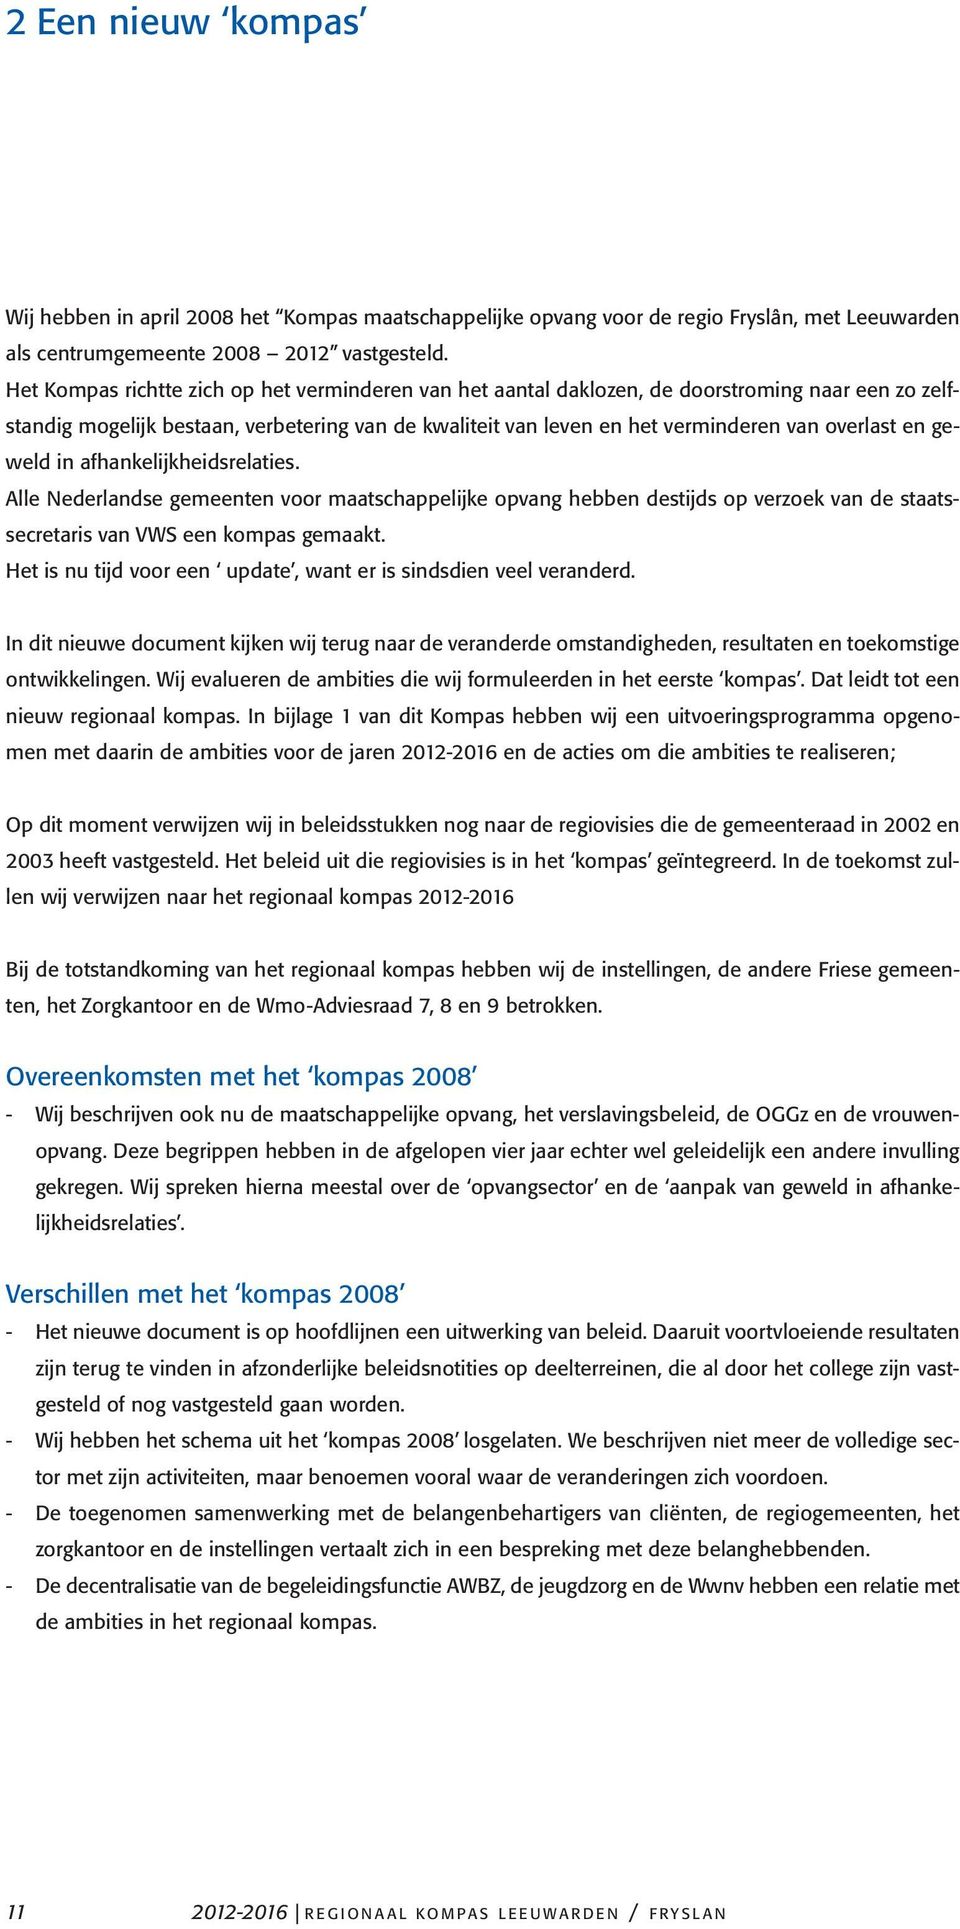 geweld in afhankelijkheidsrelaties. Alle Nederlandse gemeenten voor maatschappelijke opvang hebben destijds op verzoek van de staatssecretaris van VWS een kompas gemaakt.